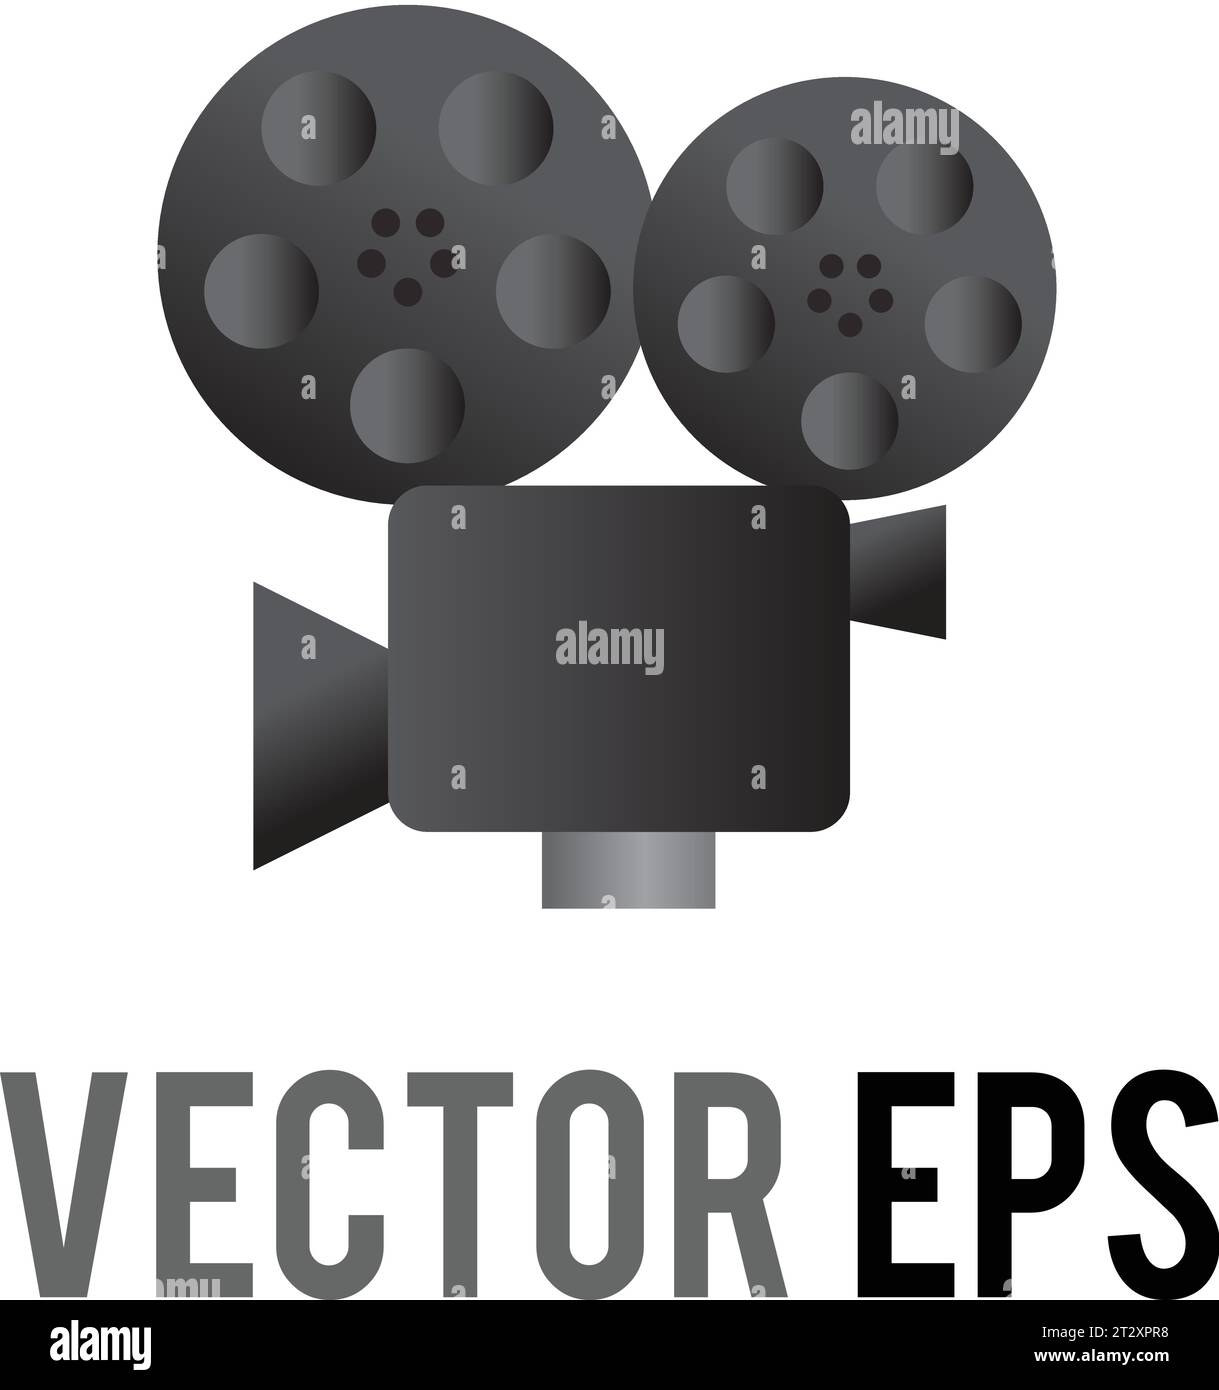 L'icona isolata di una classica telecamera vettoriale grigia e nera con due bobine montate di pellicola, mirino e obiettivo, utilizzata per contenuti riguardanti film, Illustrazione Vettoriale